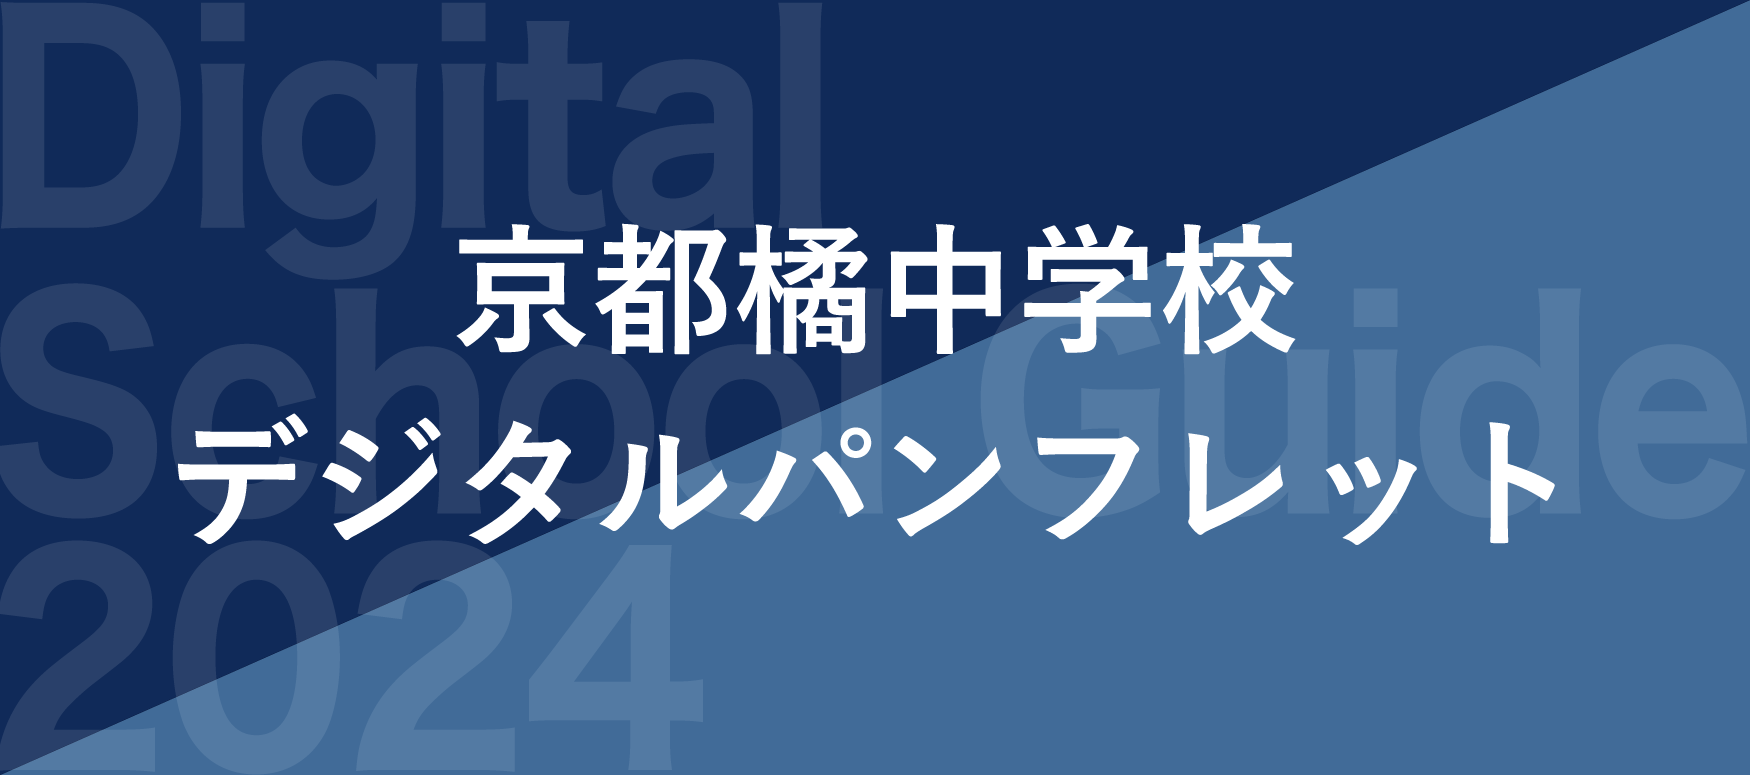 京都橘中学校デジタルパンフレット